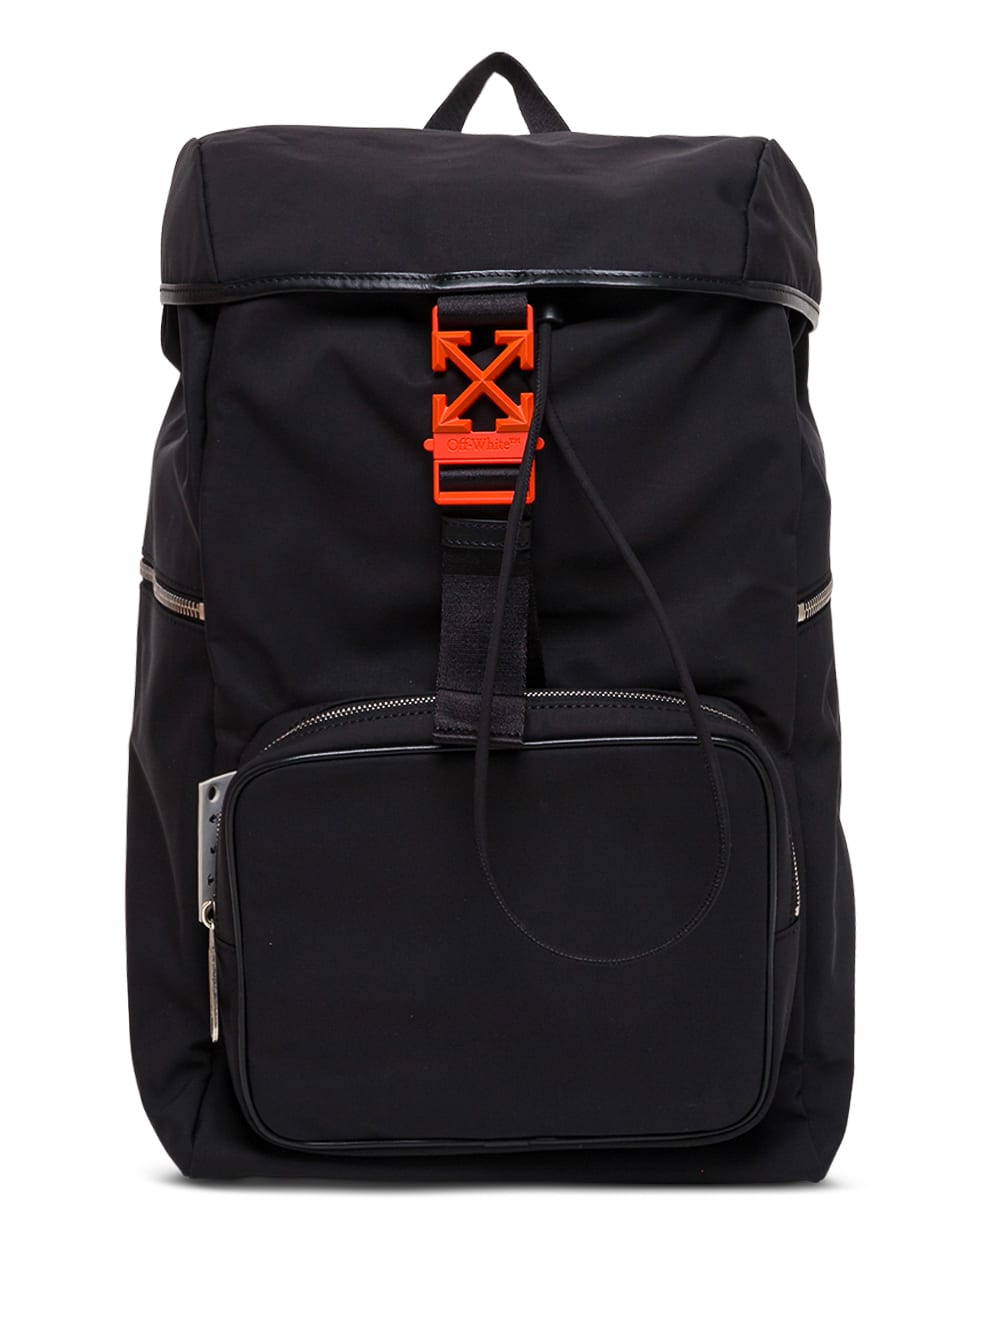 Off-White Black Arrow Nylon Backpack